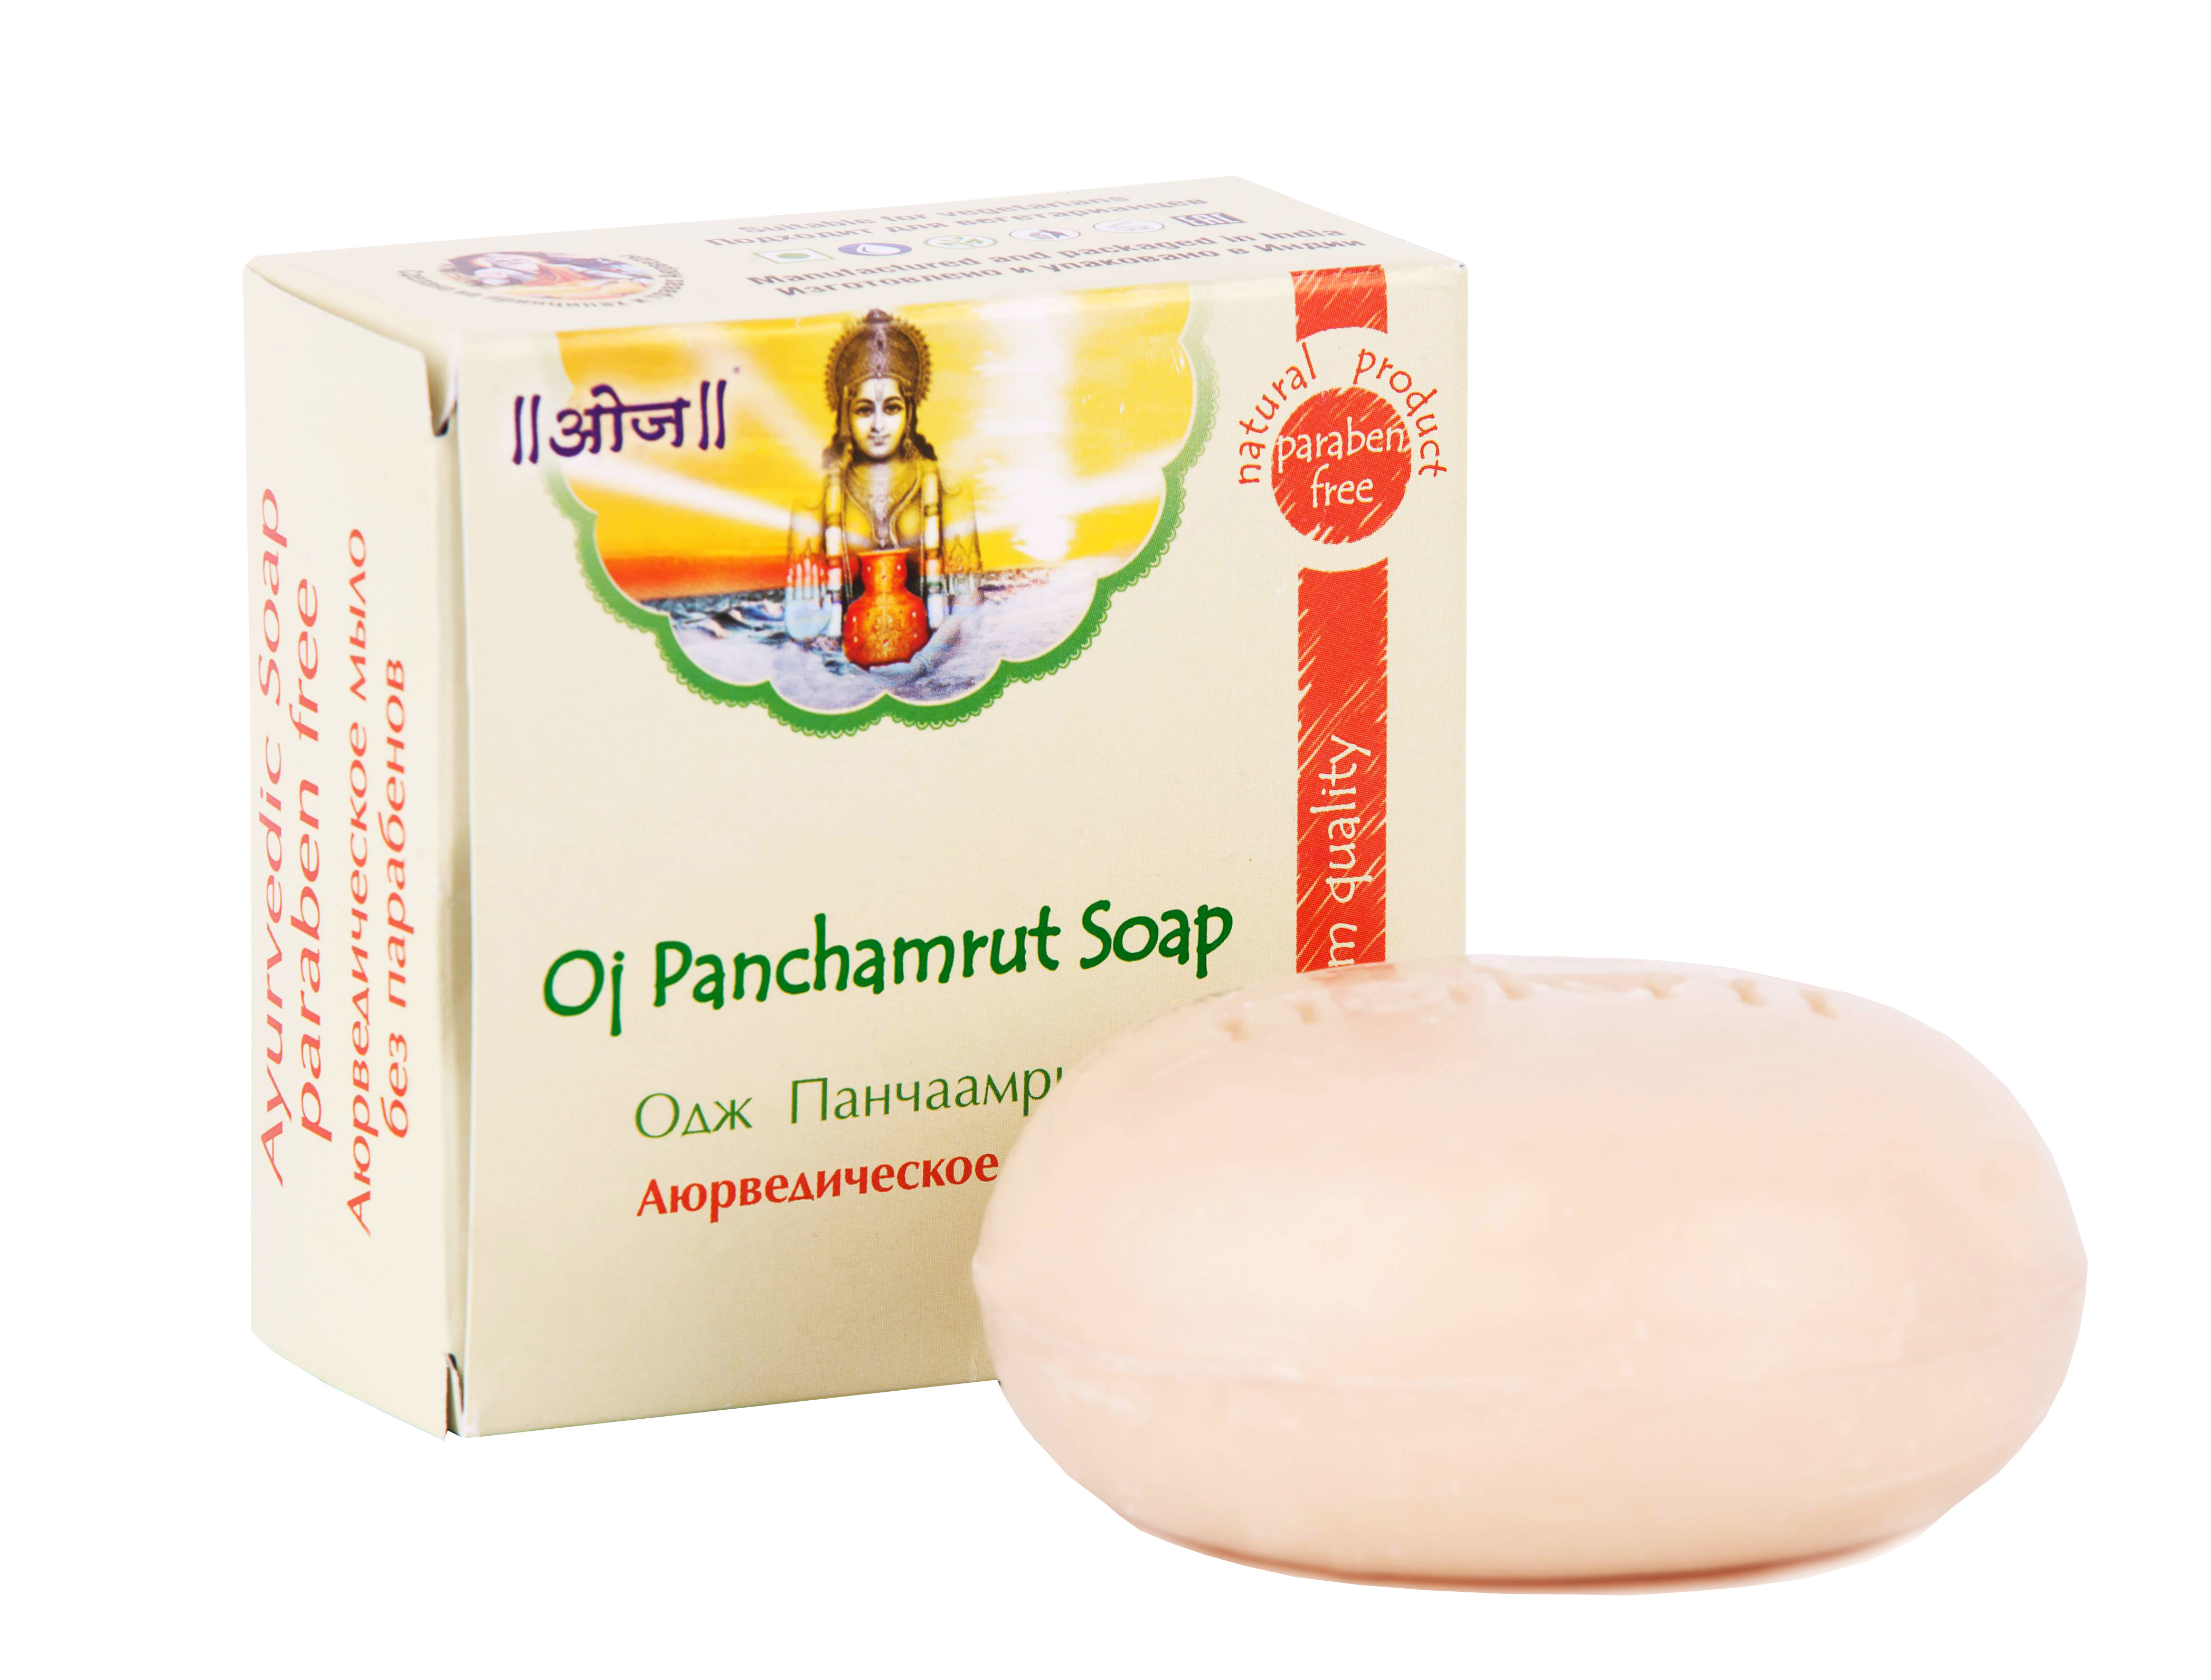 Аюрведическое мыло Одж Панчаамрита  120 гр (Oj Panchamrut Soap)